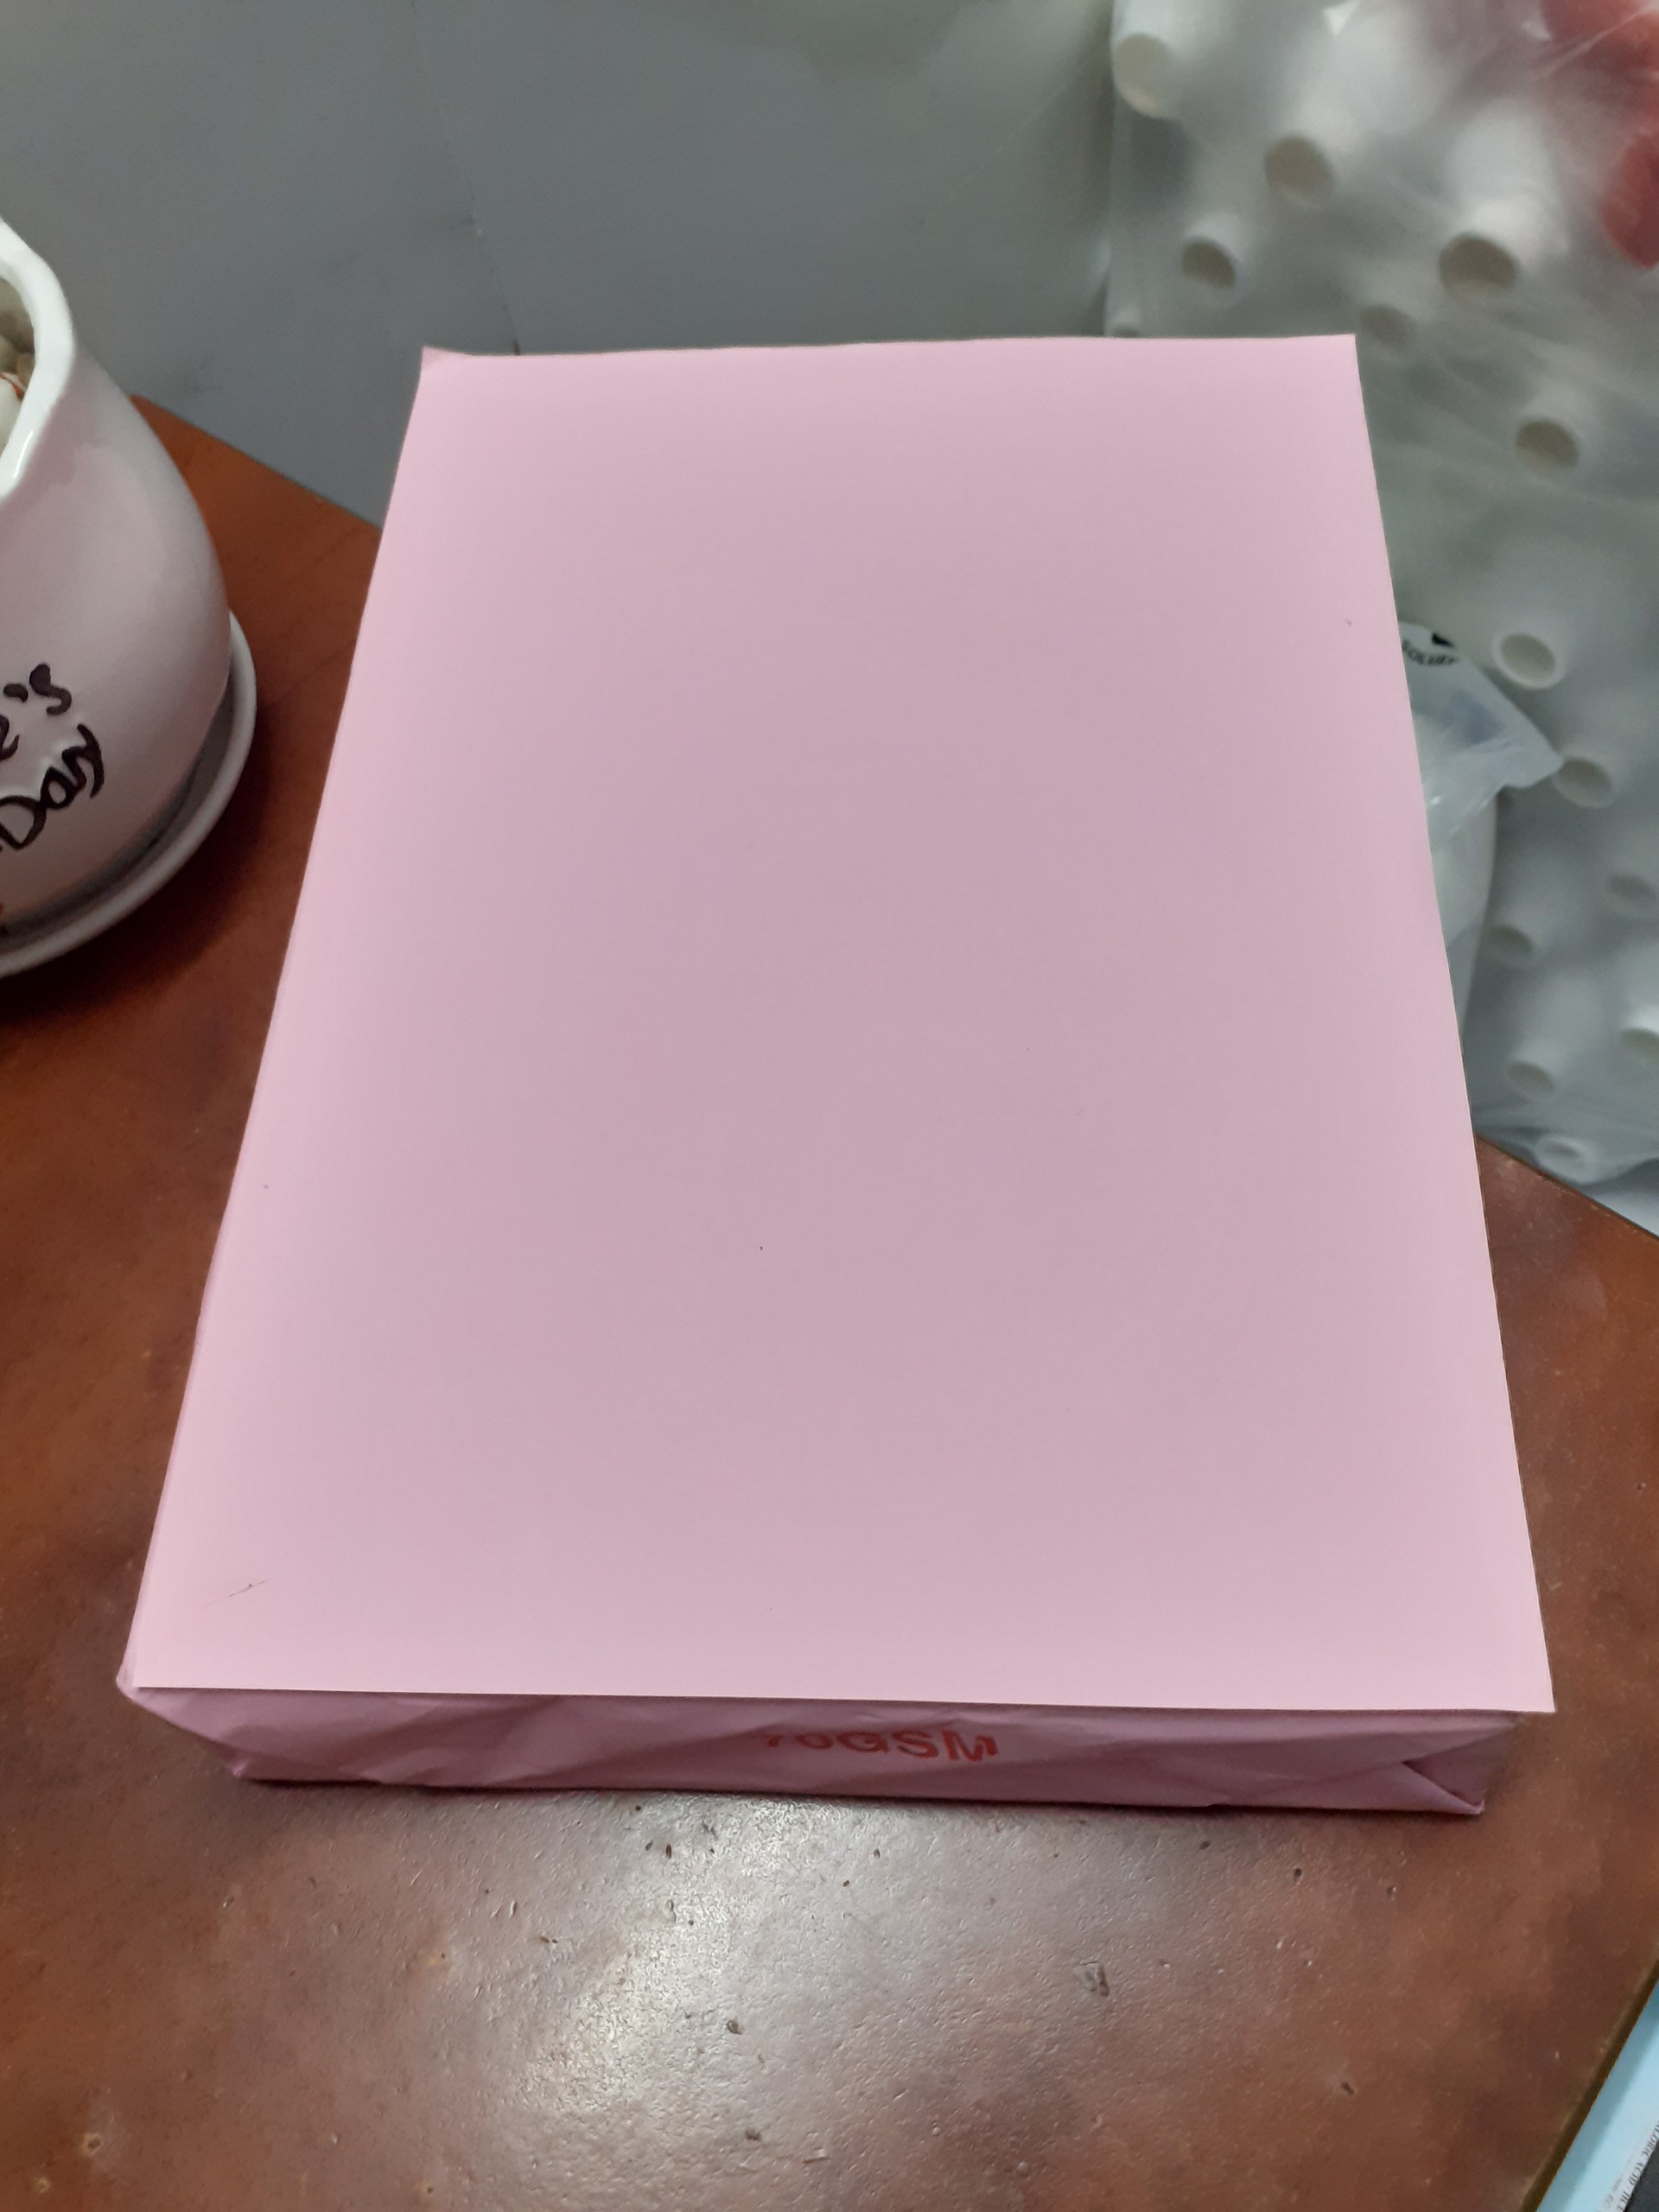 1 ram giấy A4 màu hồng thái lan ford 70gsm.